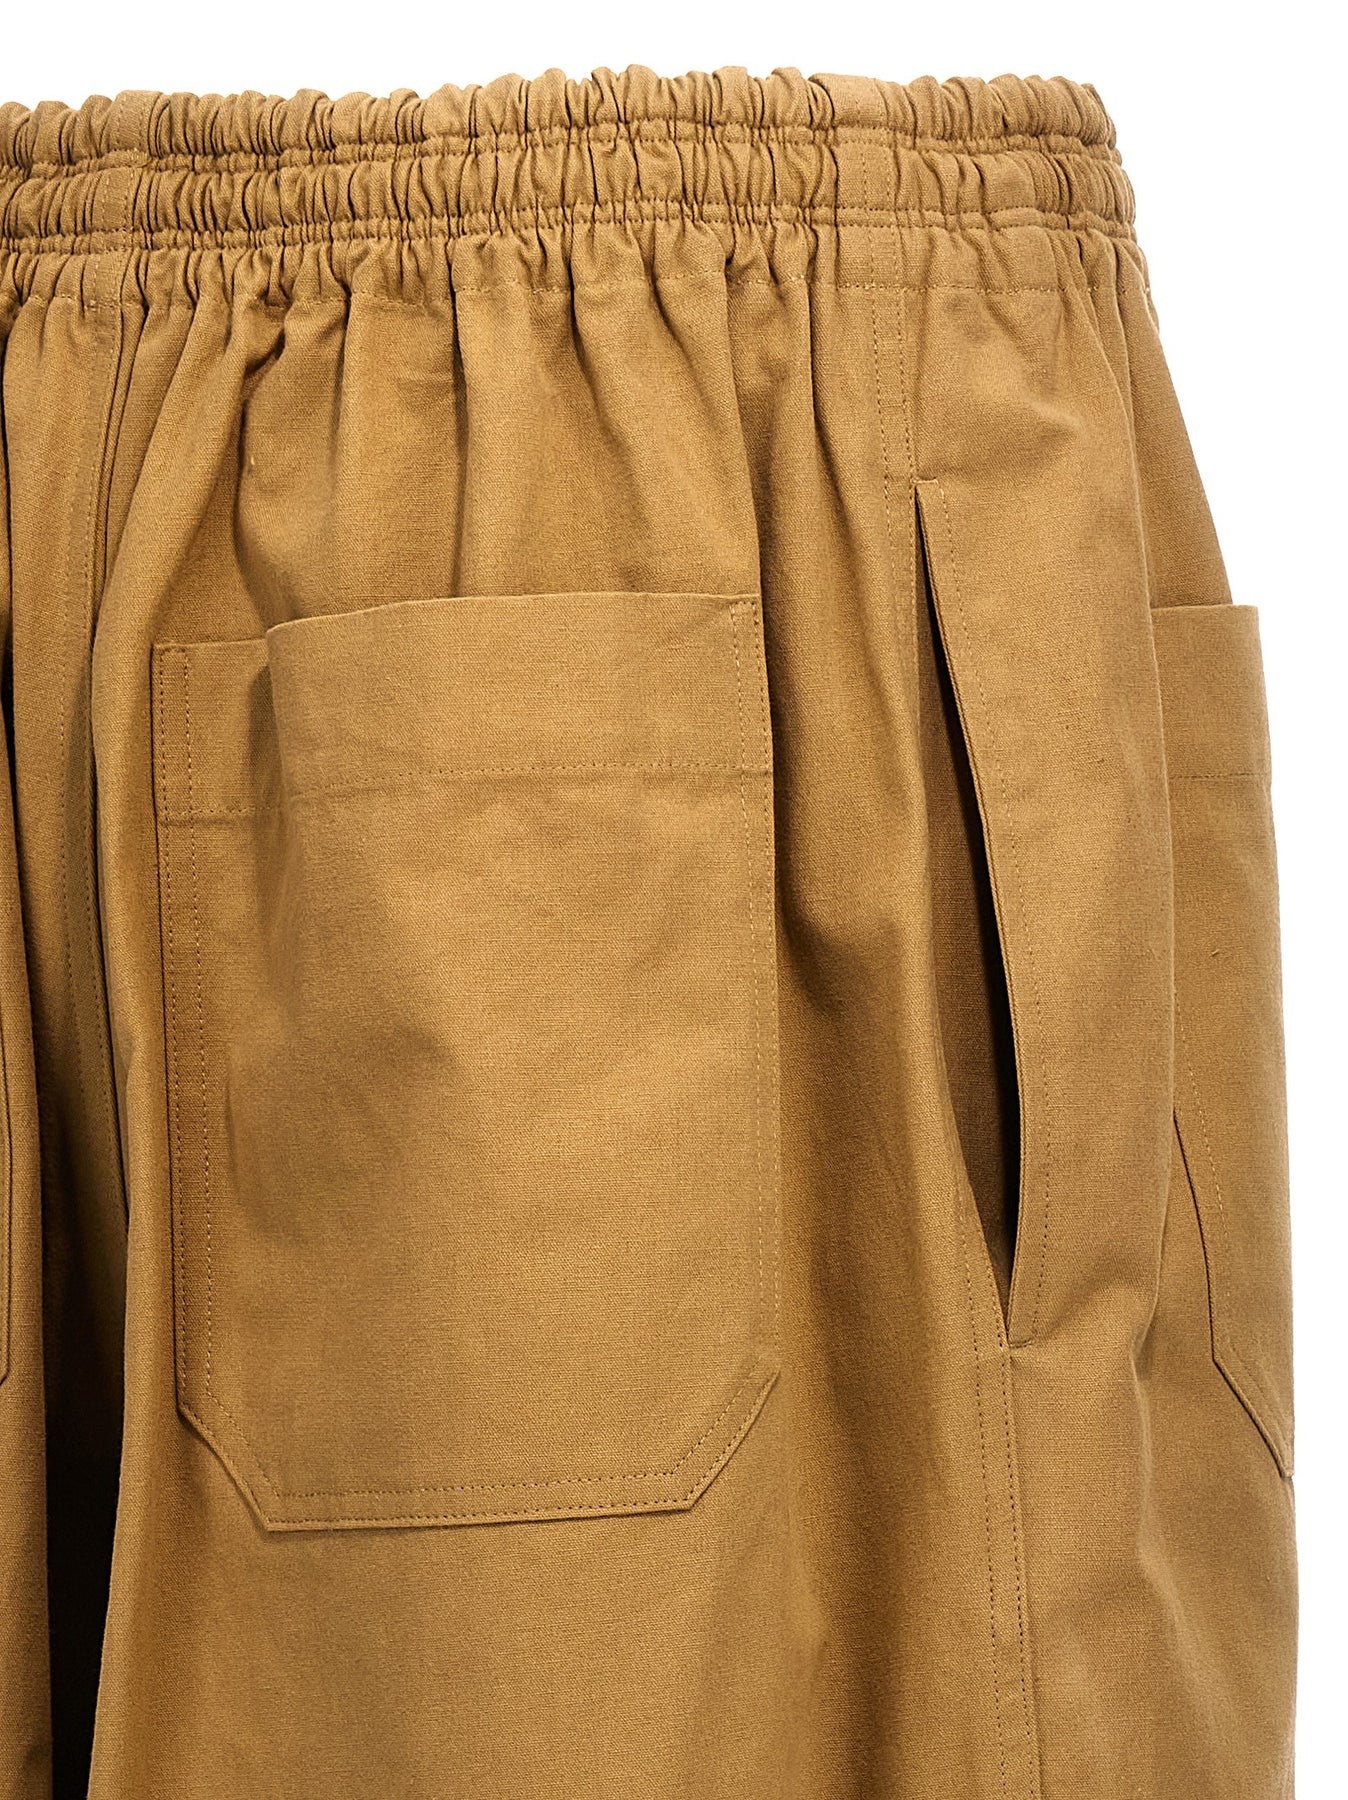 Cotton Trousers Pants Beige - 4